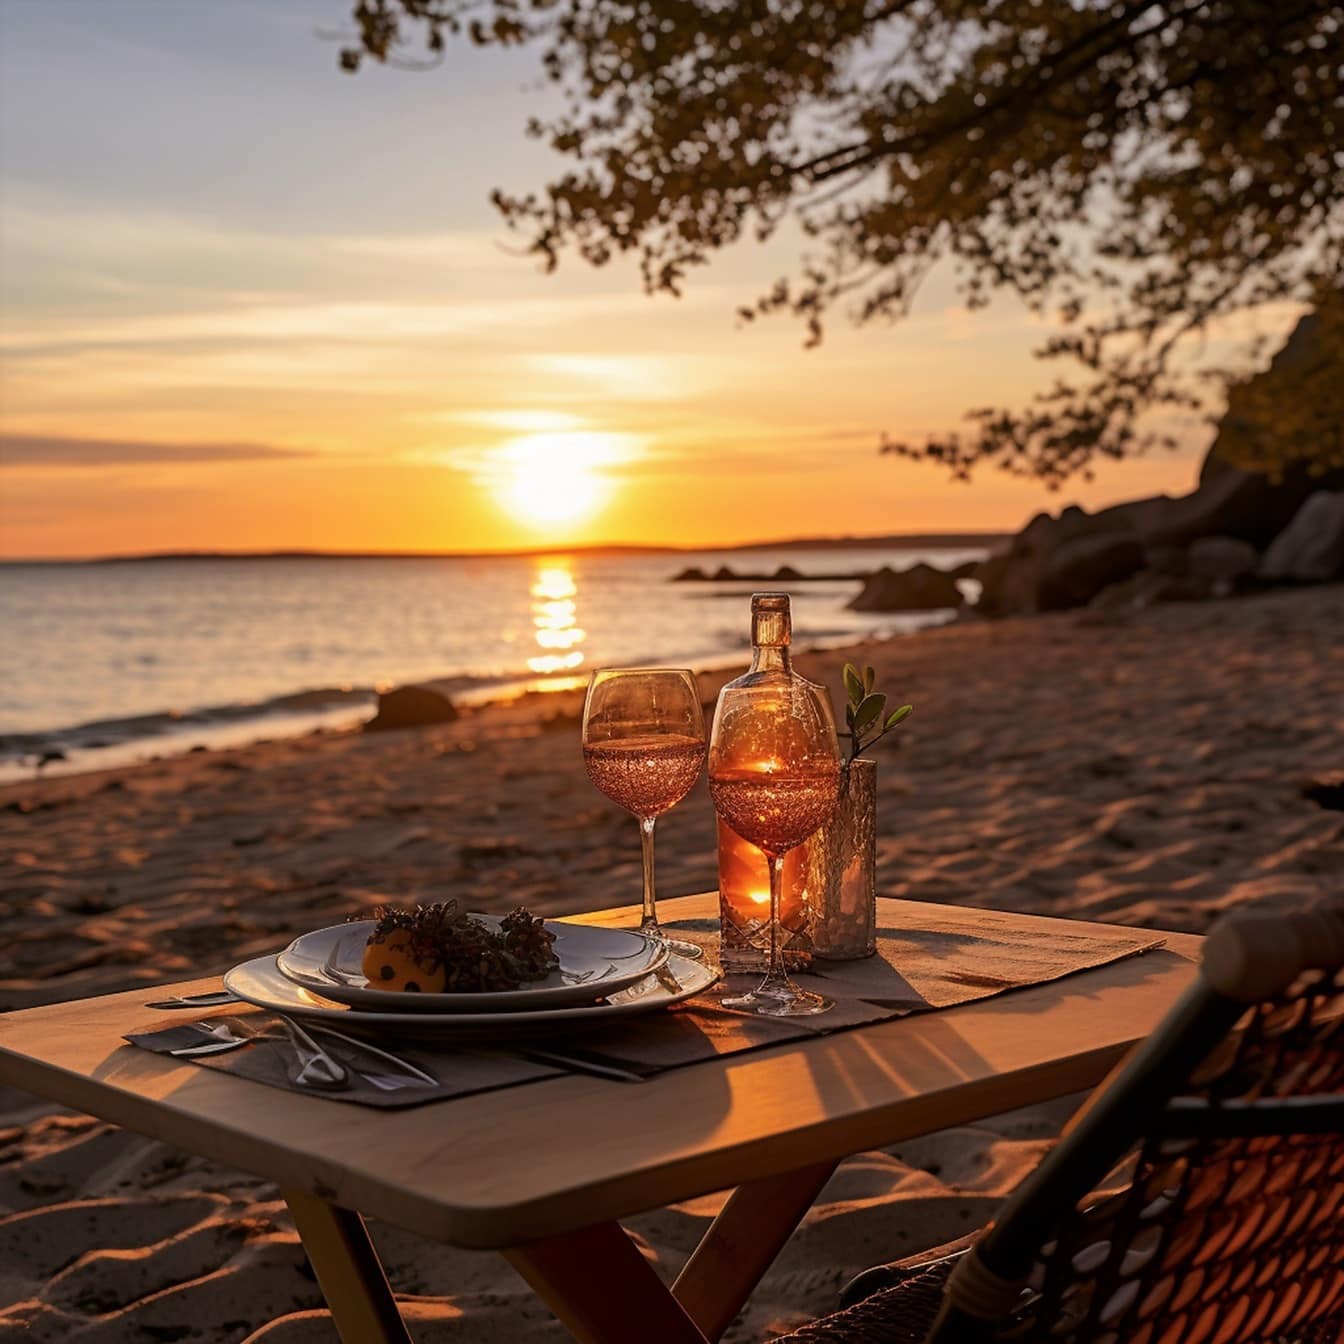 Bàn ăn tối lãng mạn với rượu vang trắng bên bờ biển lúc hoàng hôn